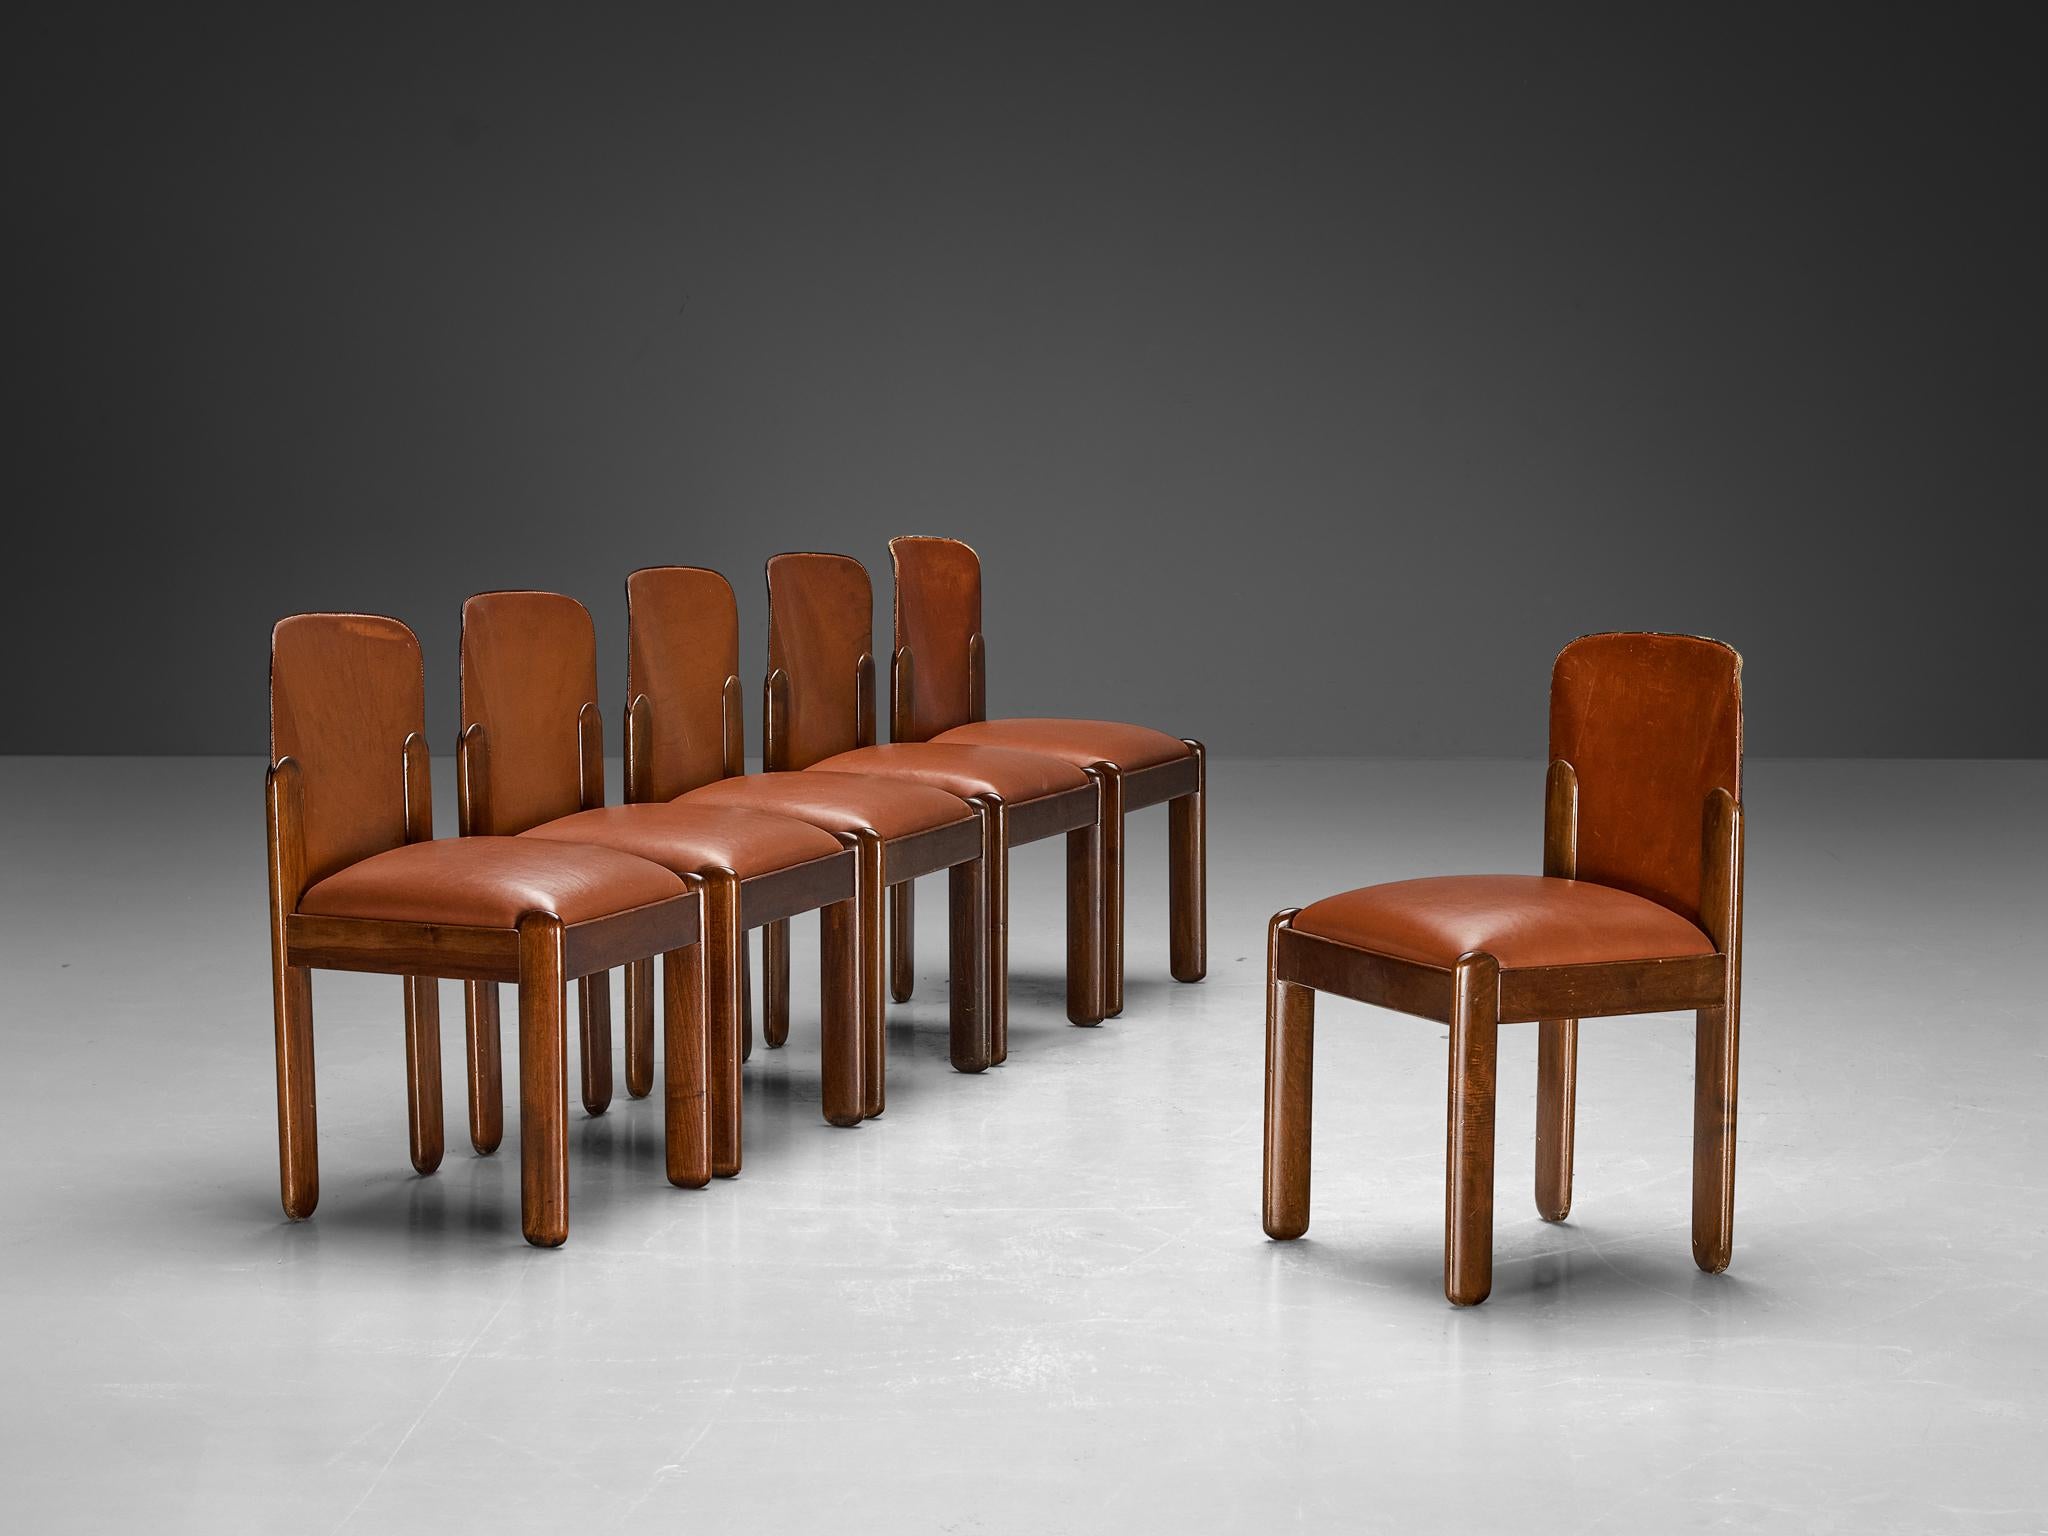 Silvio Coppola pour Bernini, ensemble de six chaises de salle à manger, modèle '330', faux cuir brun rouge, noyer, Italie, 1969.

Magnifique ensemble de chaises de salle à manger en similicuir marron avec une teinte rouge et en bois de noyer par le